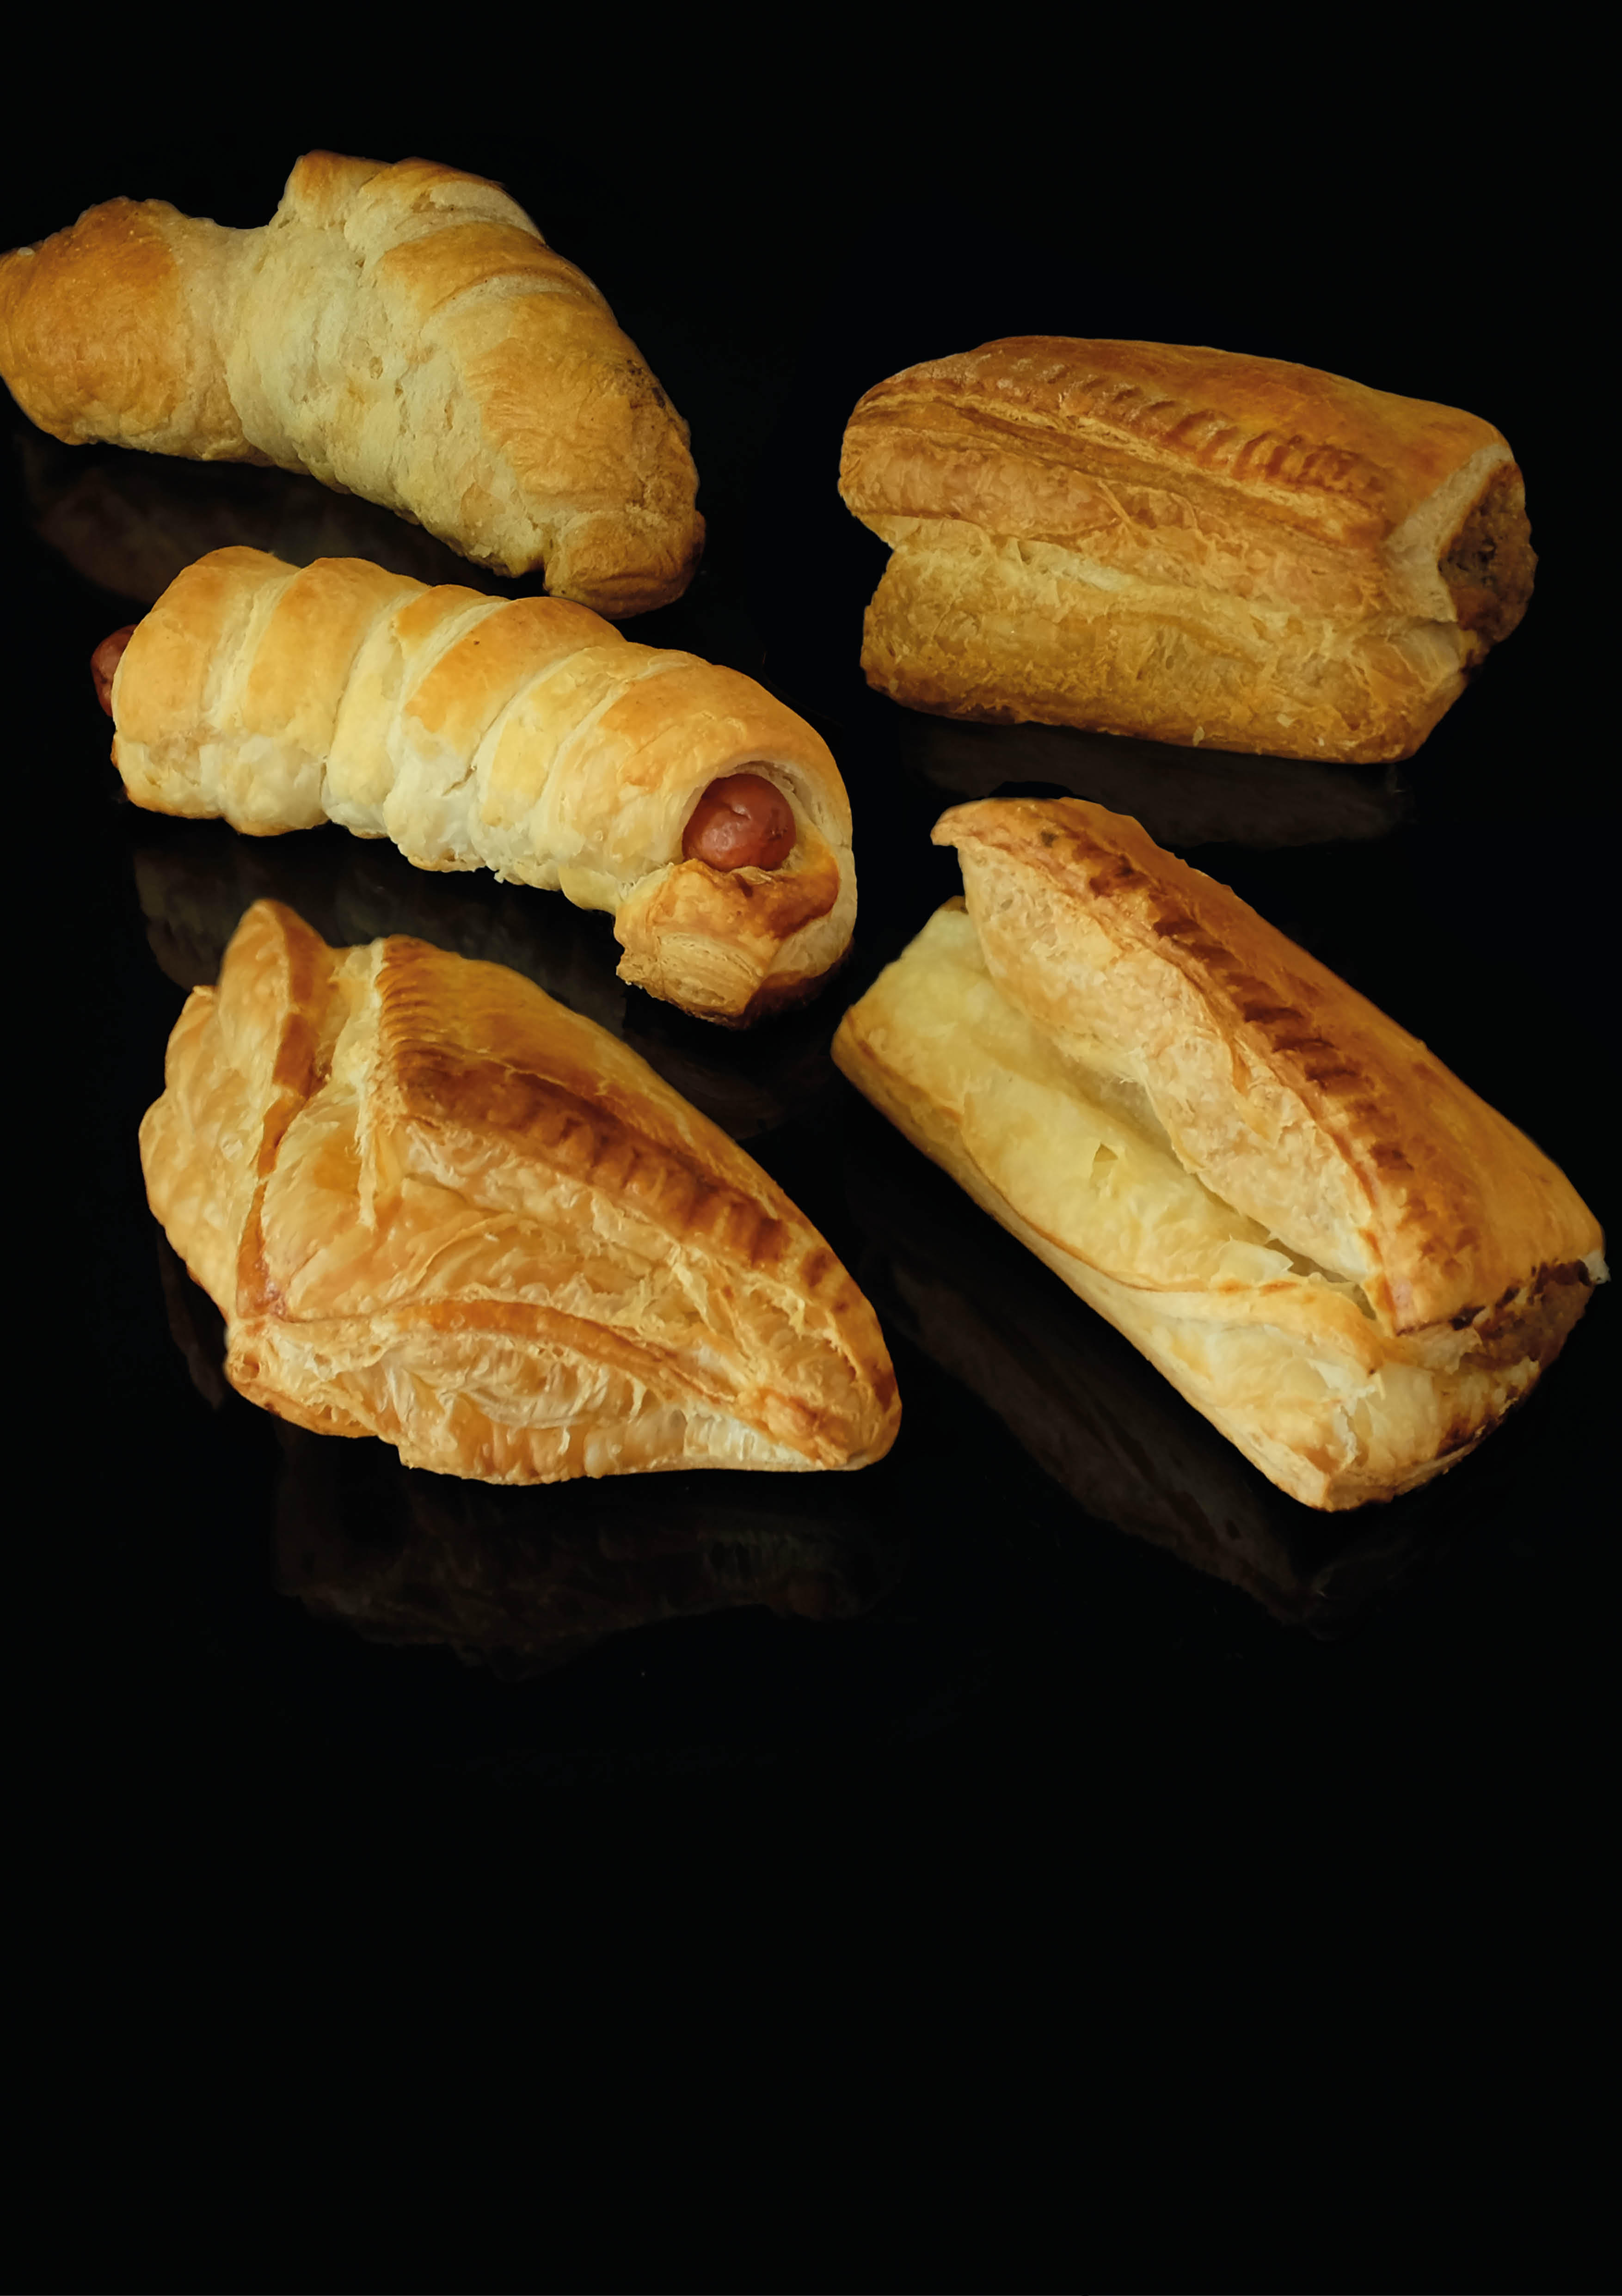 Bilder Bäckerei-Confiserie Richner AG